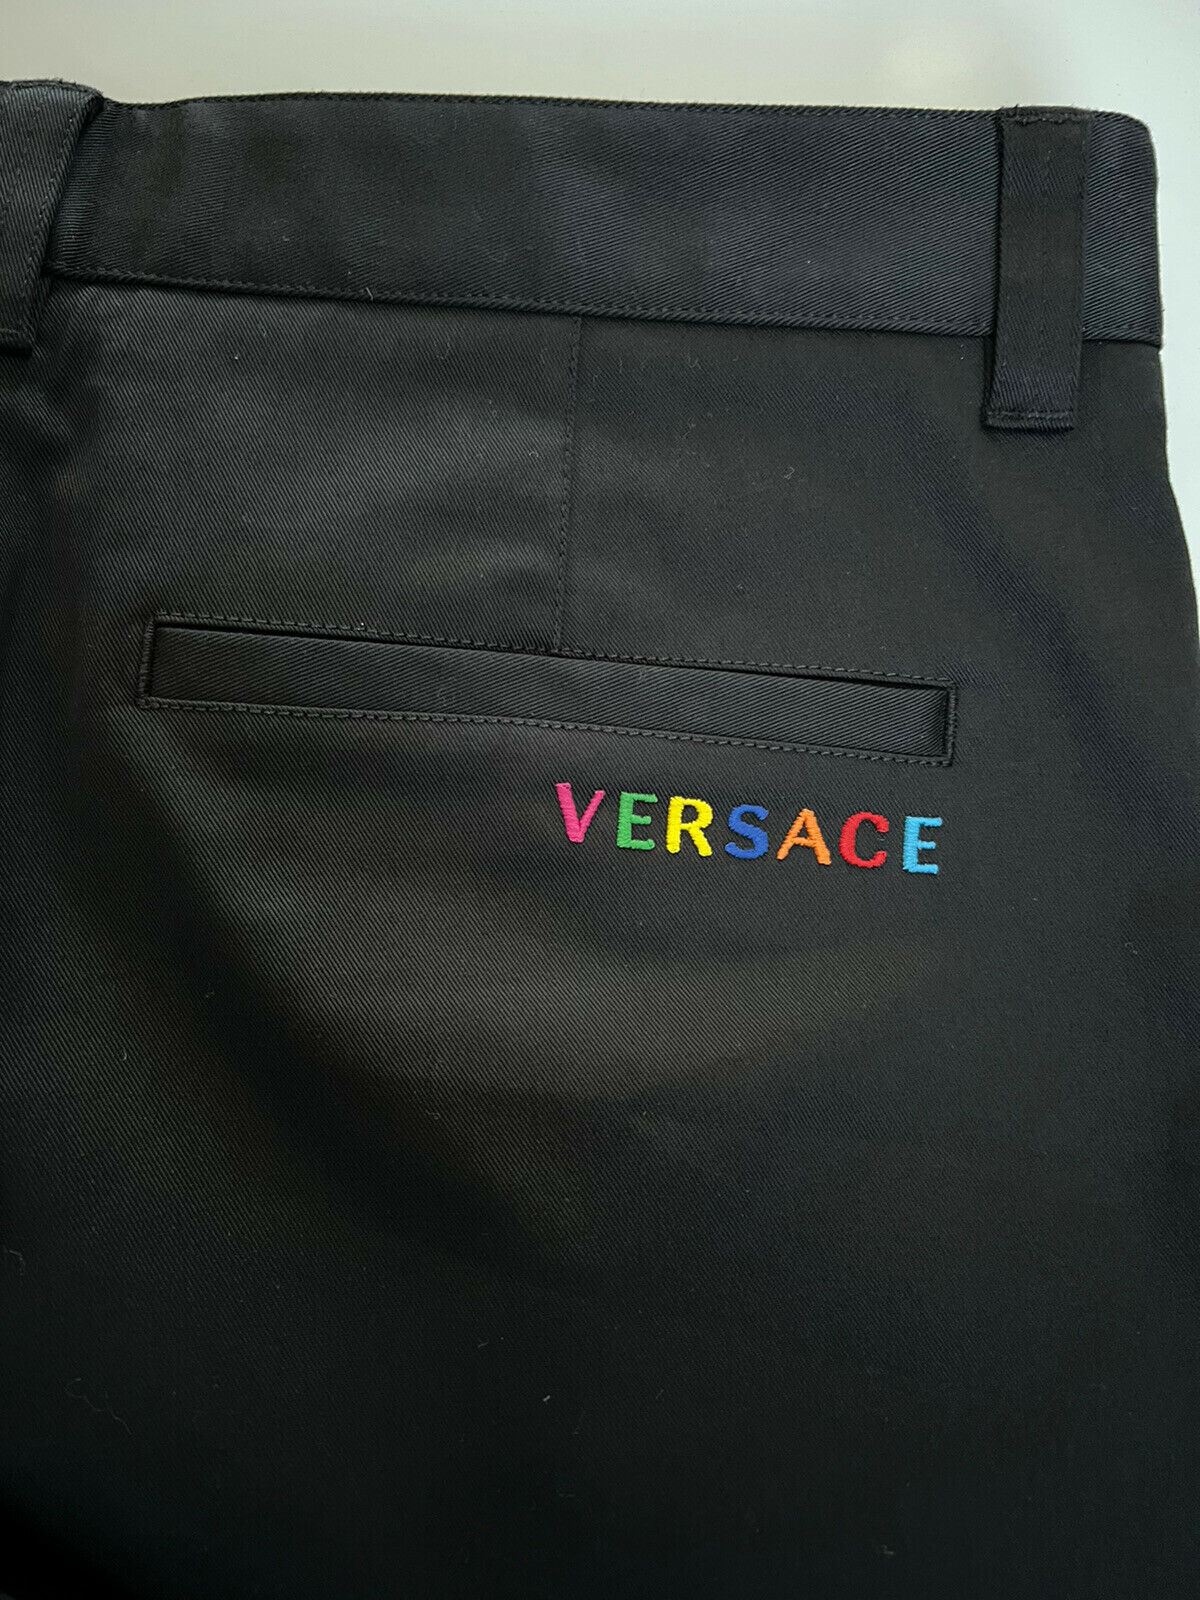 Neu mit Etikett: 650 $ Versace Herren-Schwarzhose 36 US (52 Euro) Hergestellt in Italien A84004